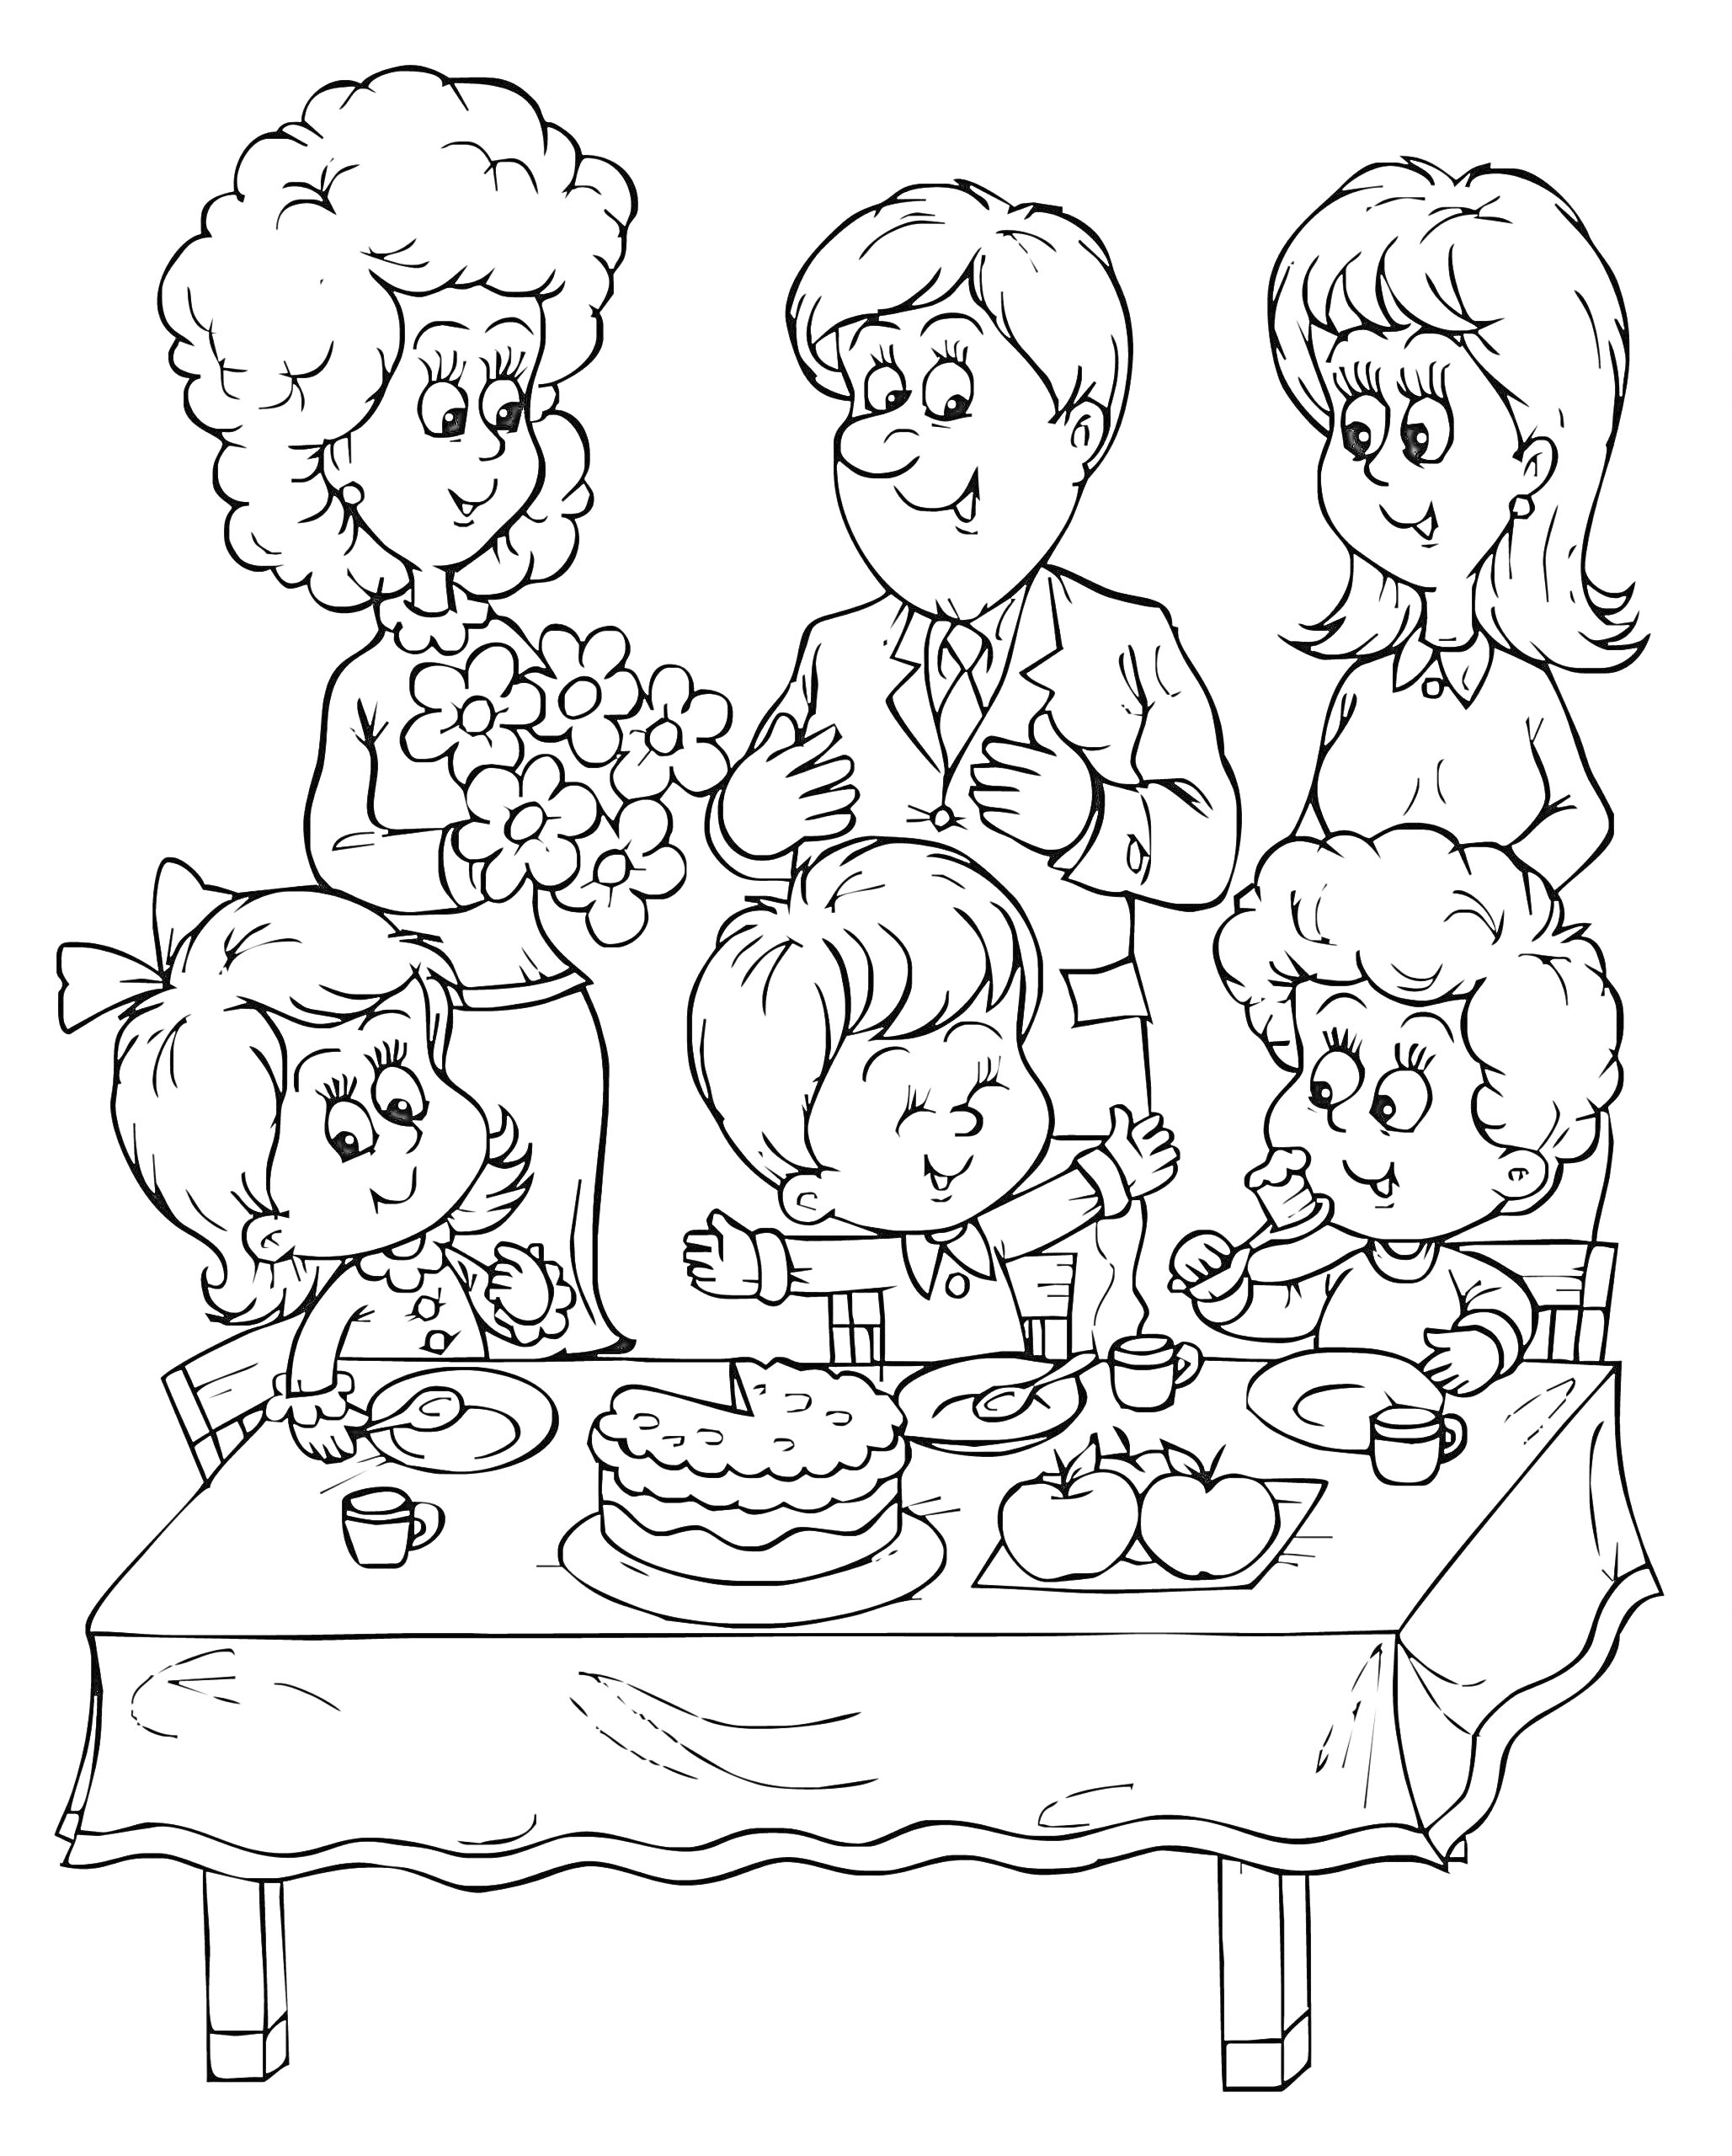 Раскраска Празднование Дня защиты детей: дети за столом с десертами и взрослые с цветами